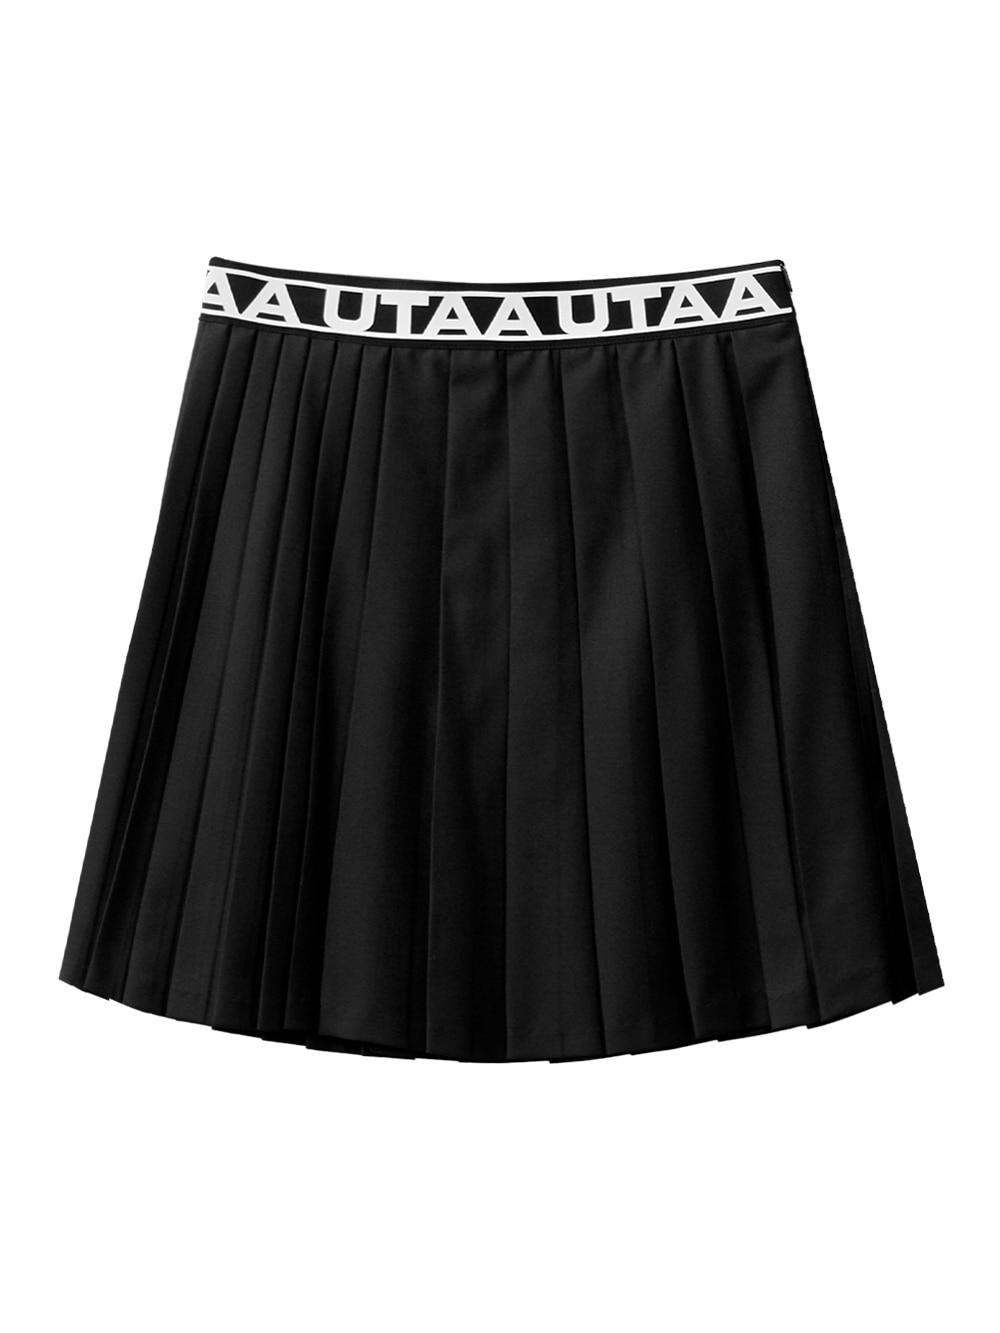 UTAA Logo Track Banding Long Pleats Skirt : Black (UB3SKF813BK)